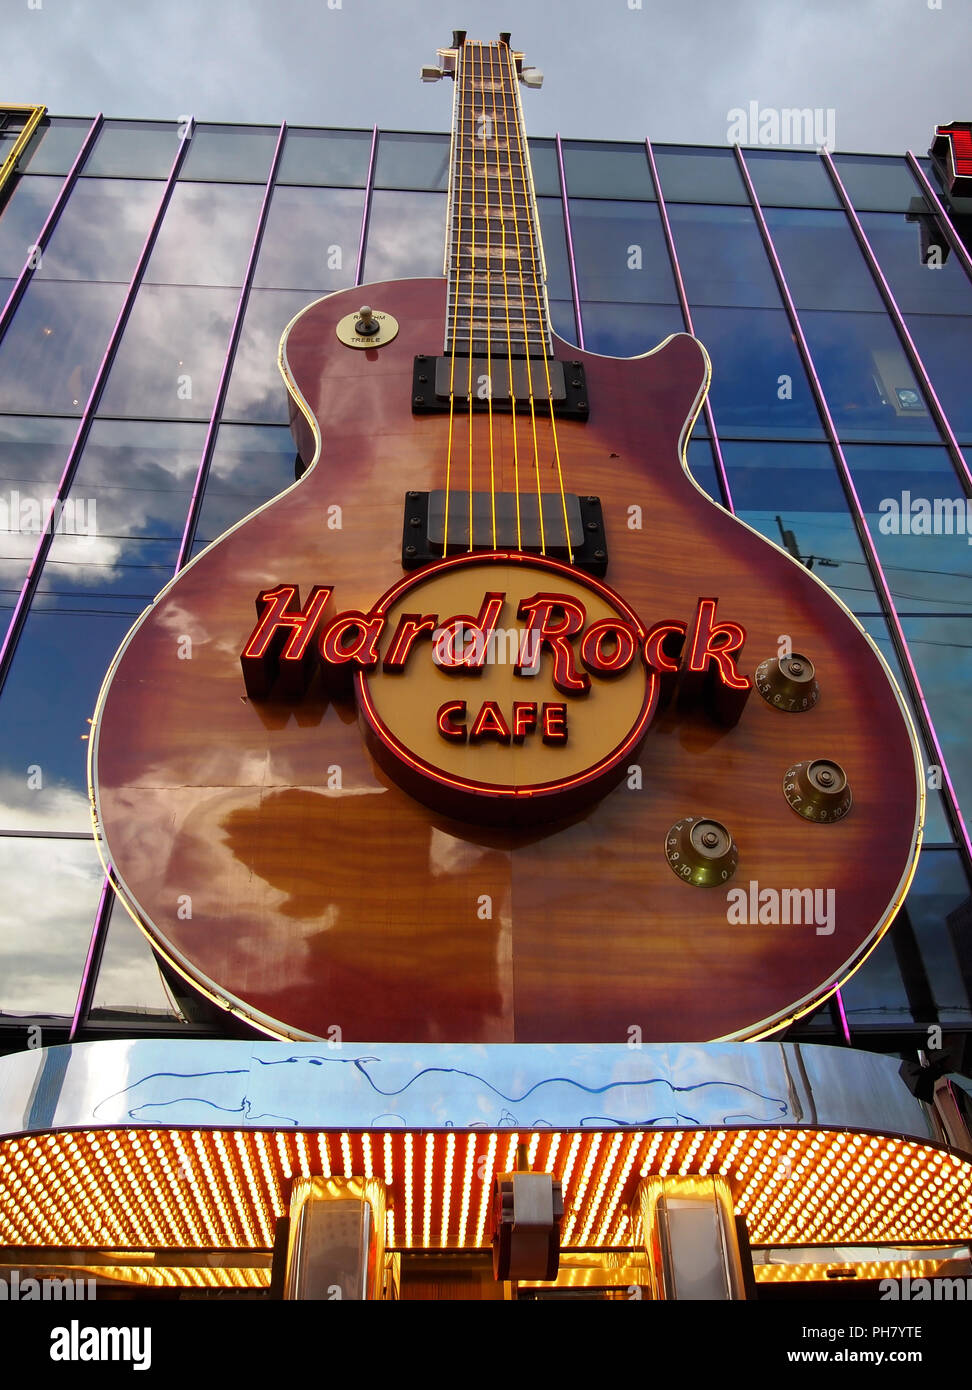 LAS VEGAS, NEVADA - Juillet 21, 2018 : Le géant, plus grand que nature guitare fixé à l'avant de l'immeuble sert de signe pour le Hard Rock Cafe. Banque D'Images